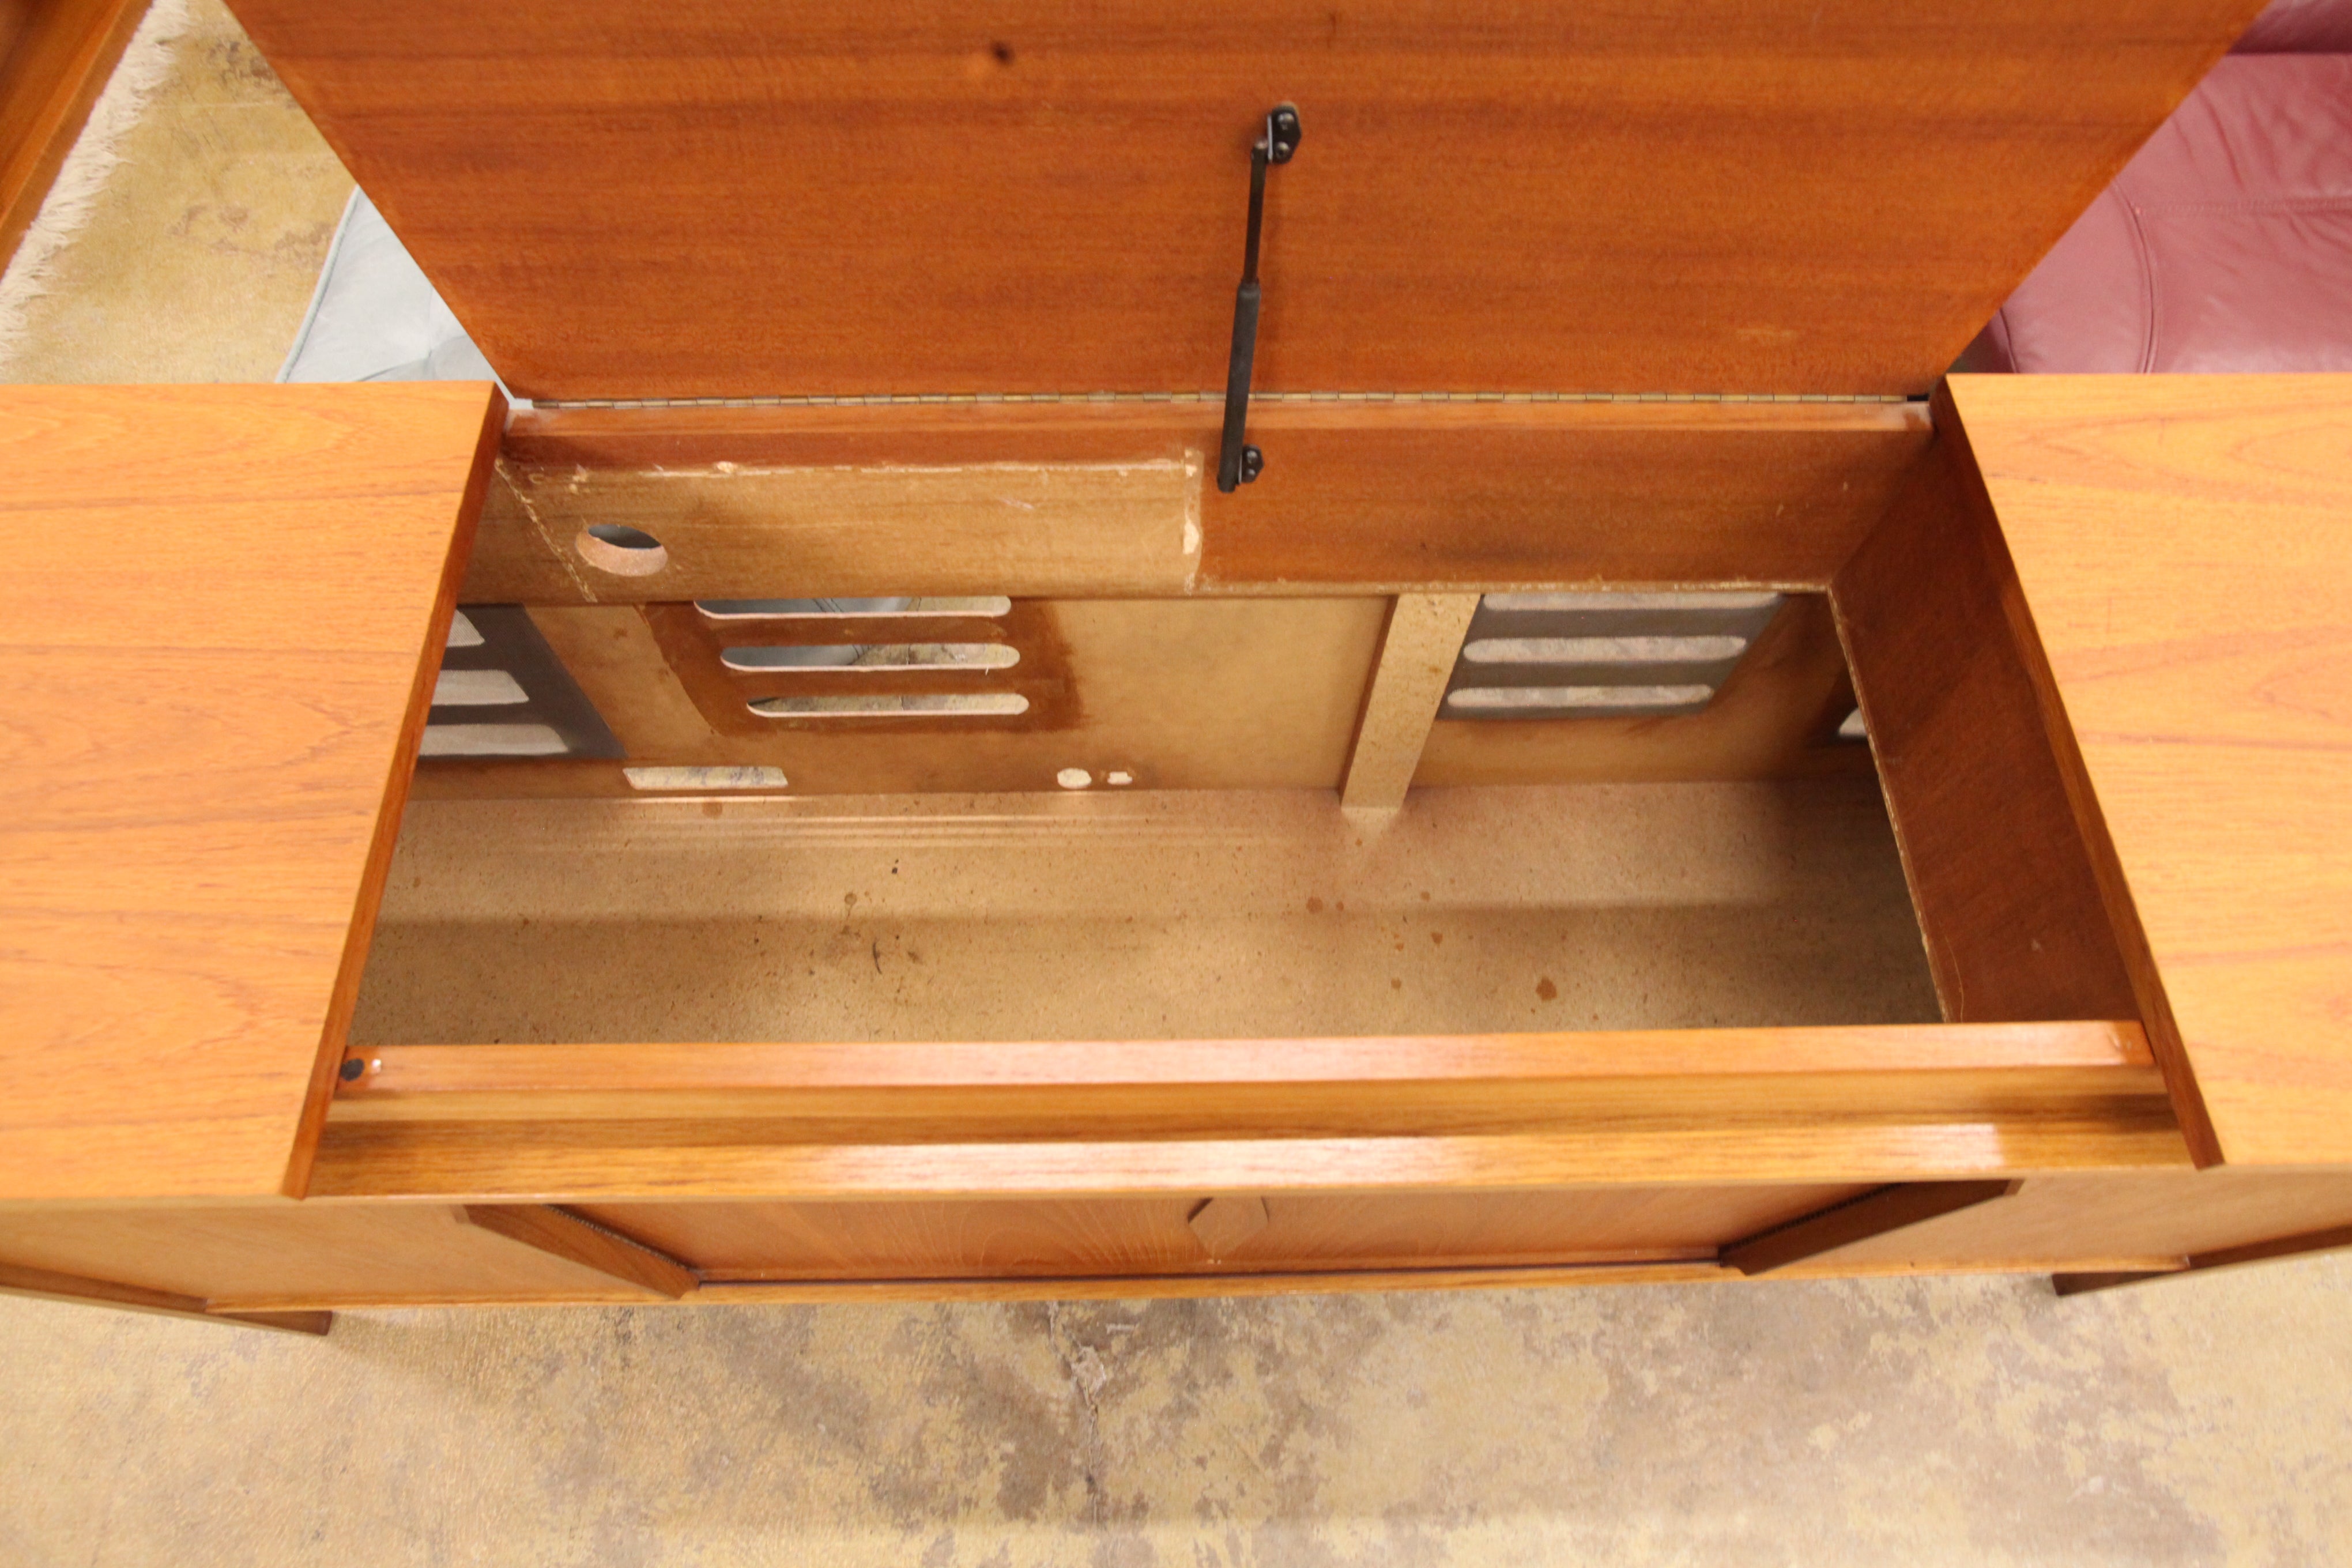 Vintage Teak Stereo Cabinet / Sideboard (60"L x 16"D x 26.5"H)